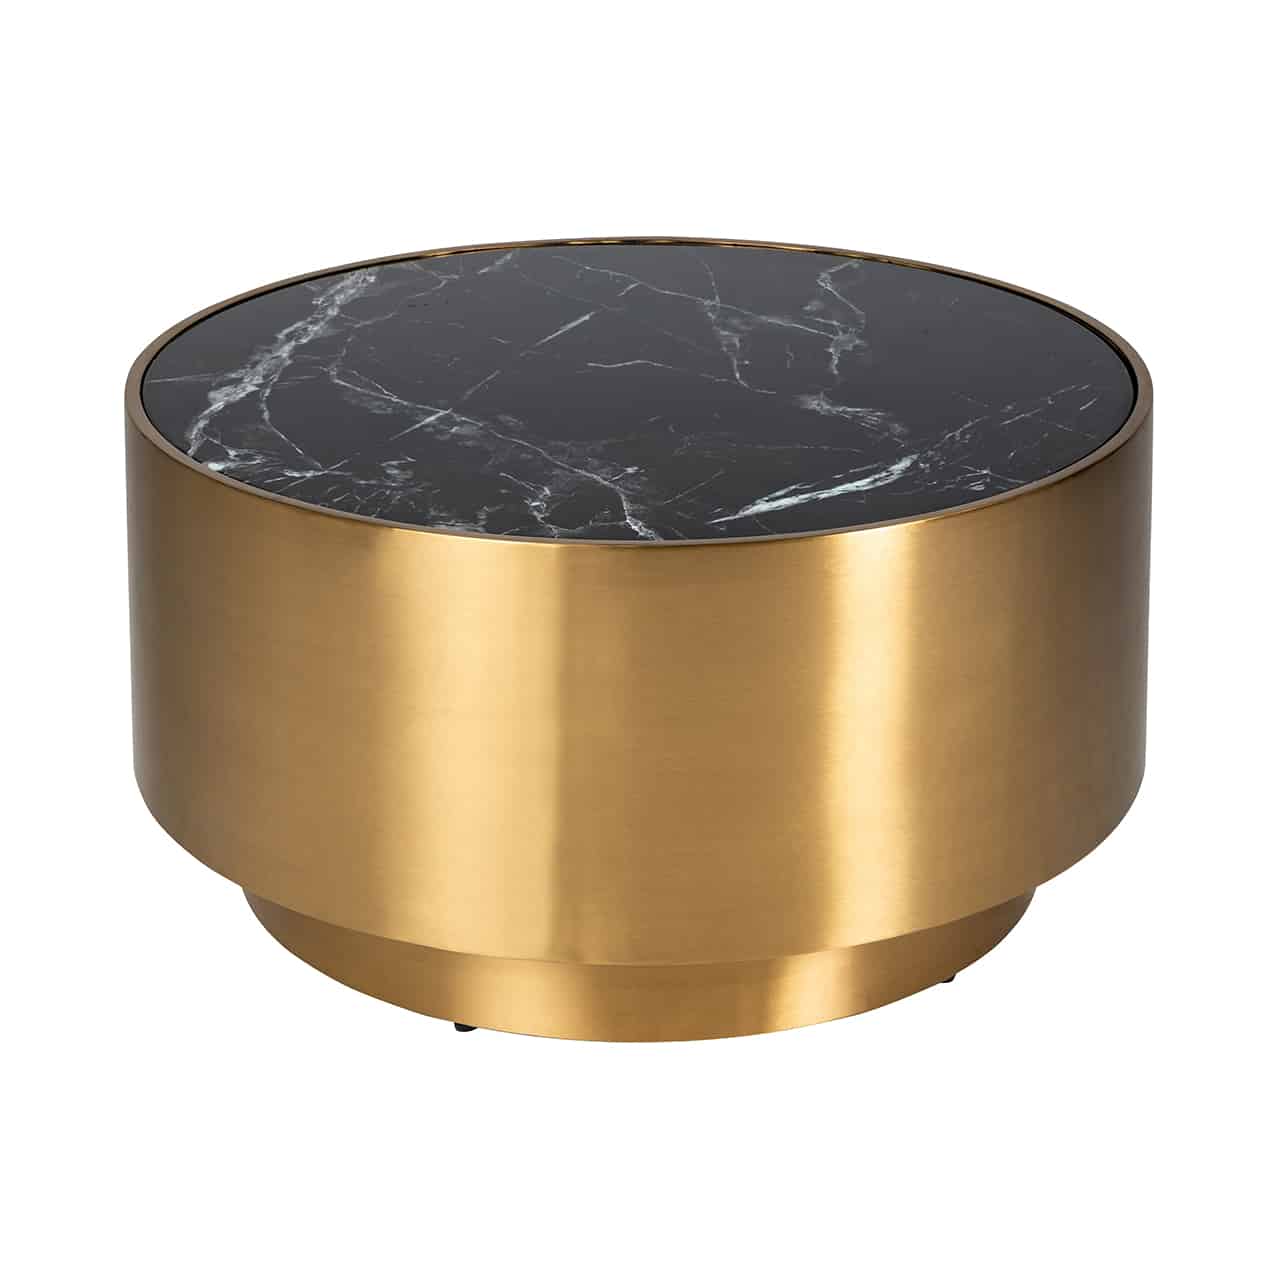 Auf einem runden, goldenen Sockel ein trommelförmiger goldener Couchtisch  mit eingelegter schwarz marmorierter Tischplatte.